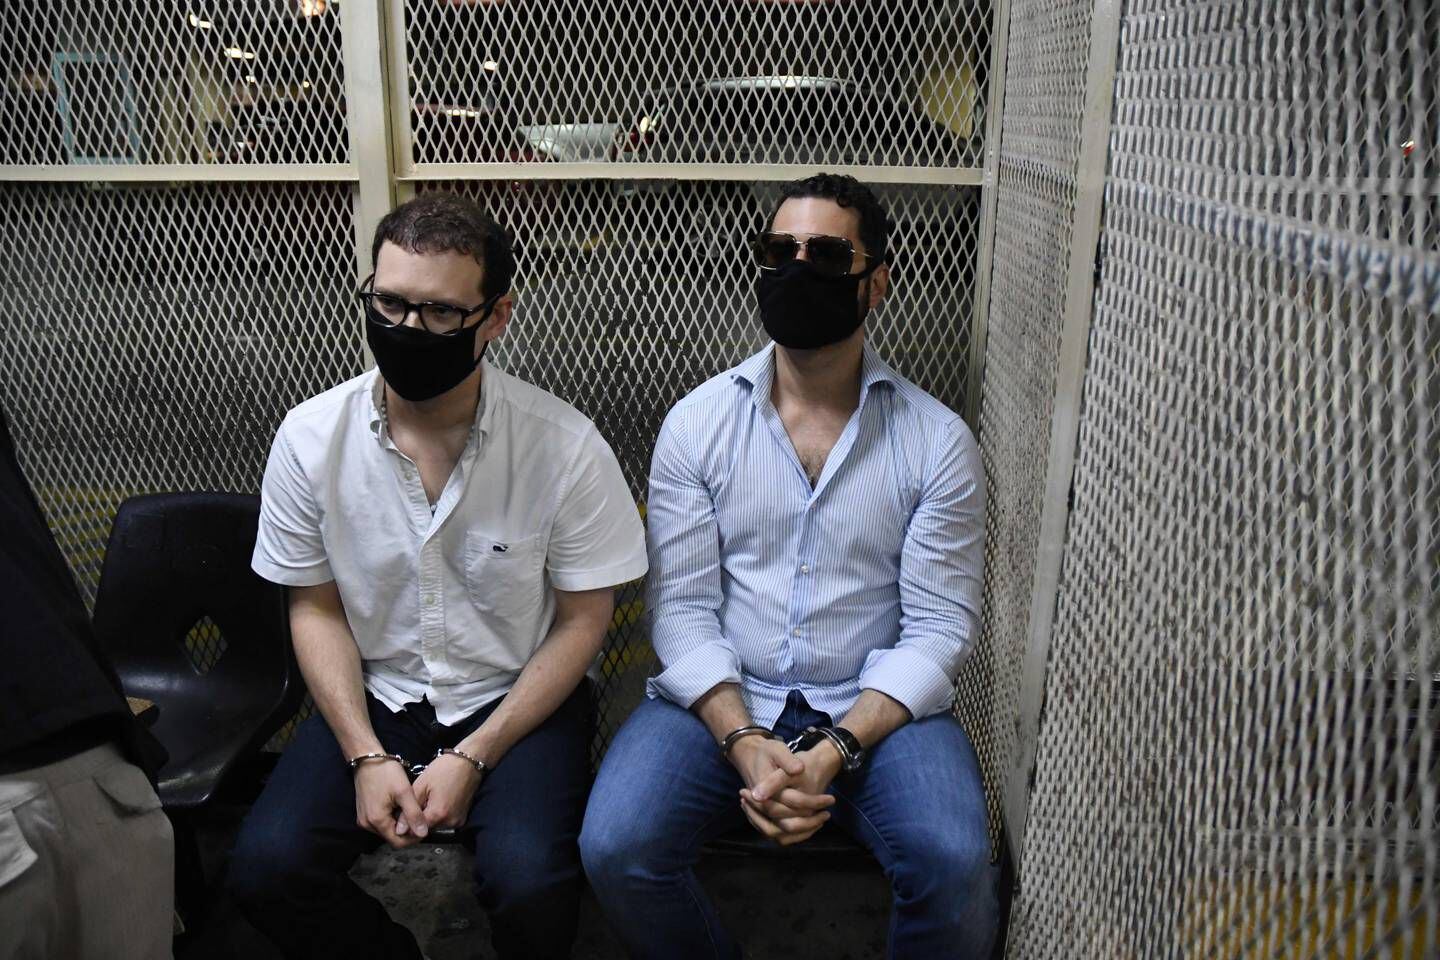 Los hermanos Luis Enrique y Ricardo Martinelli fueron detenidos en Guatemala, luego de escapar de Estados Unidos sin autorización de la Justicia.